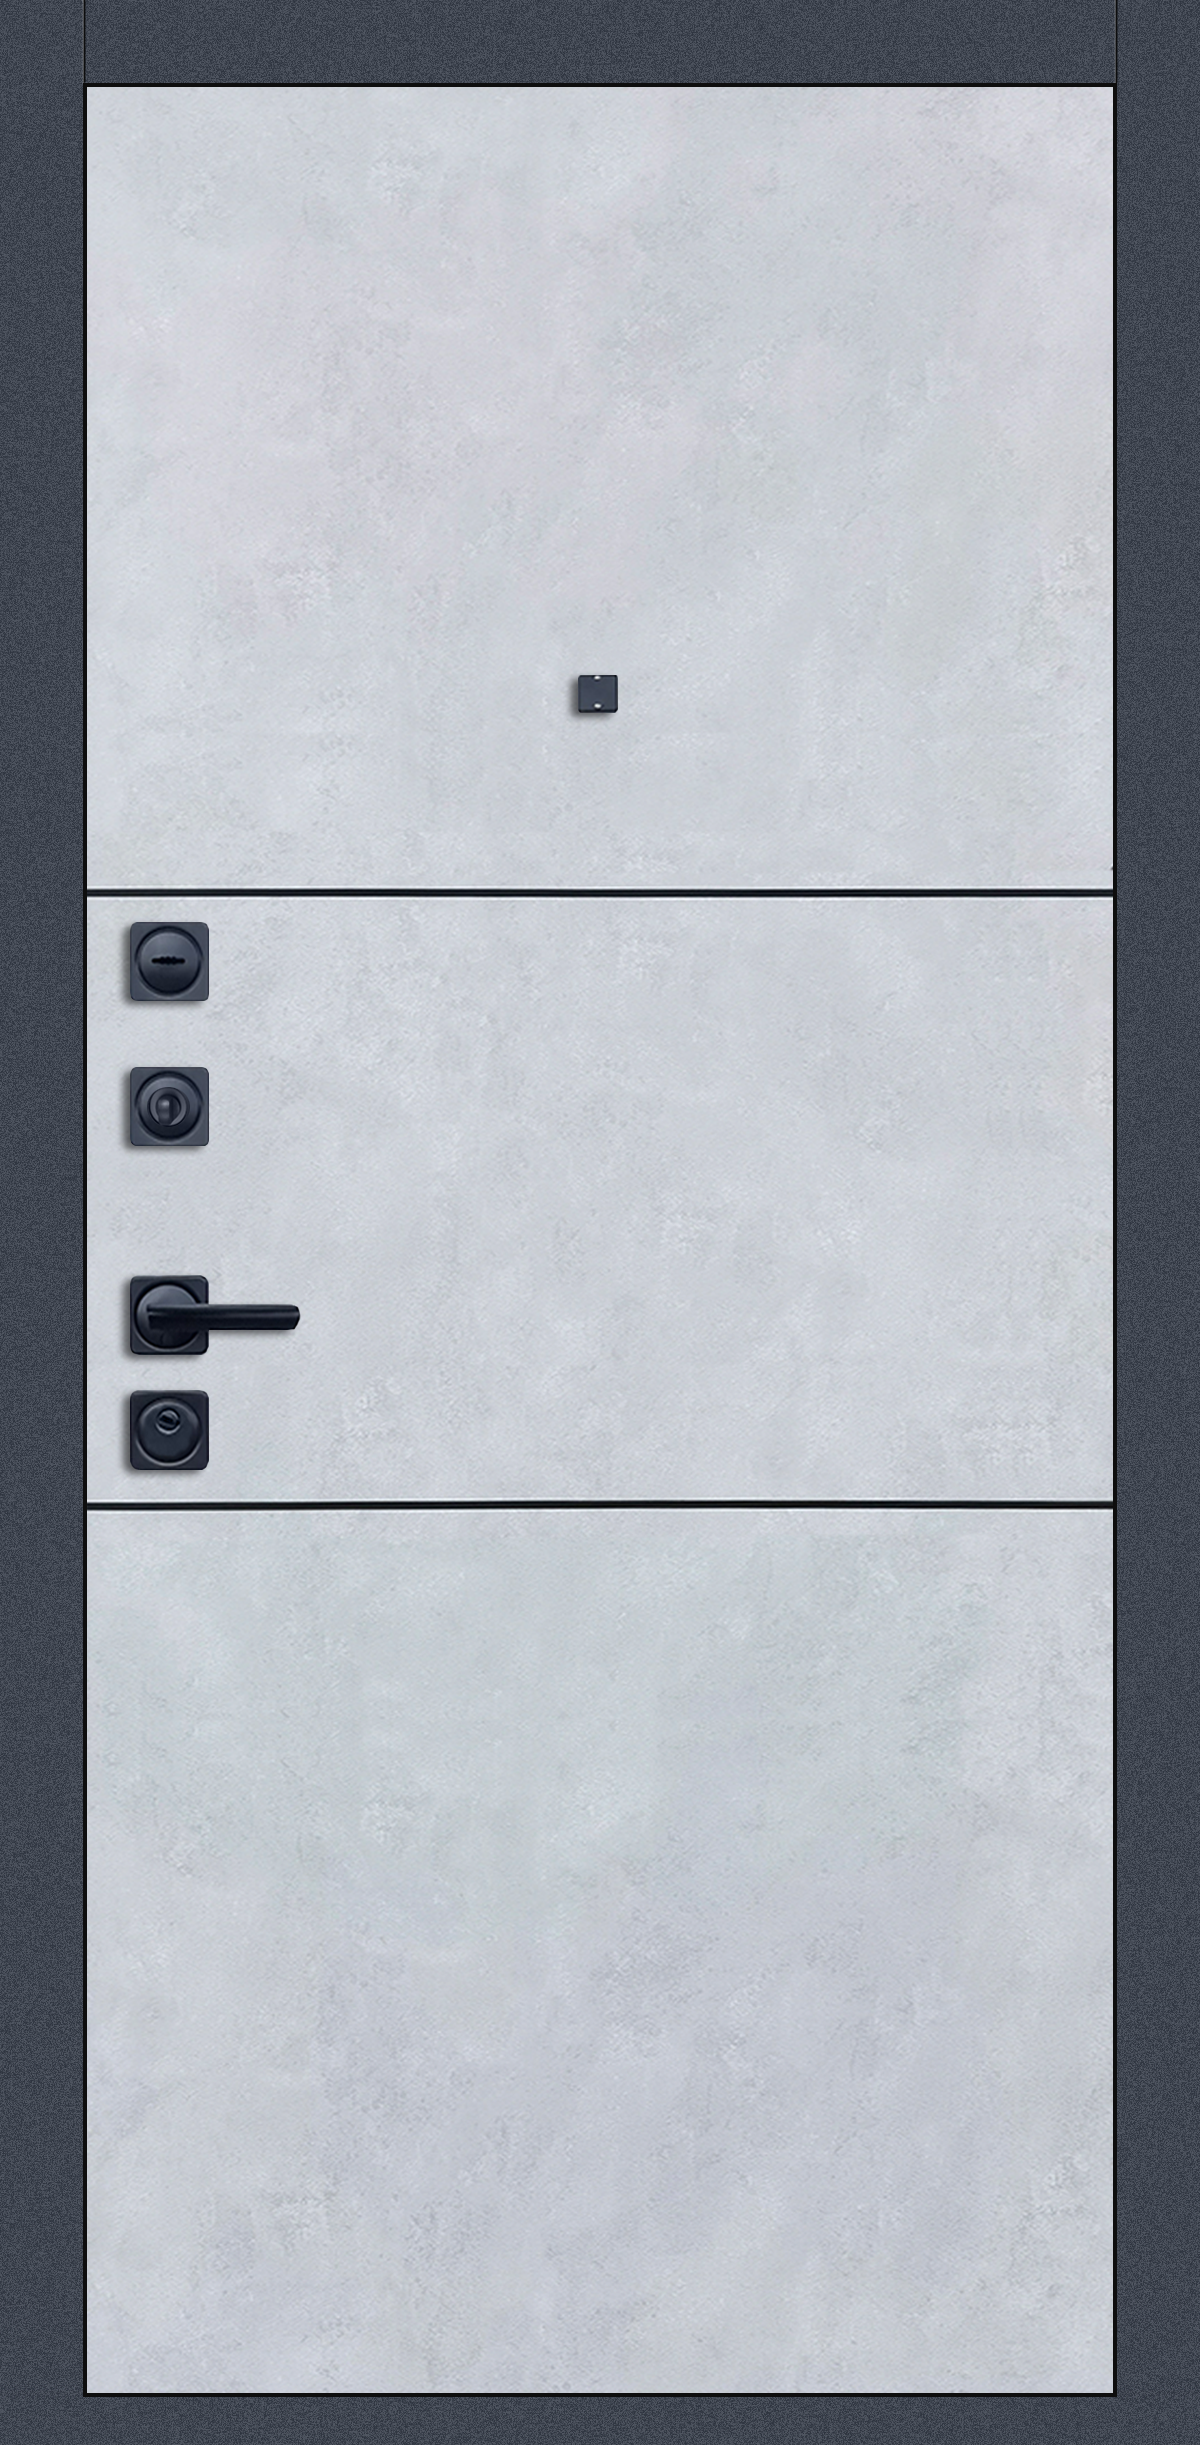 Металлическая дверь «Сканди». Вид внутренней отделки бетон снежный Вид внешней отделки: бетон графит Cтандартный наличник